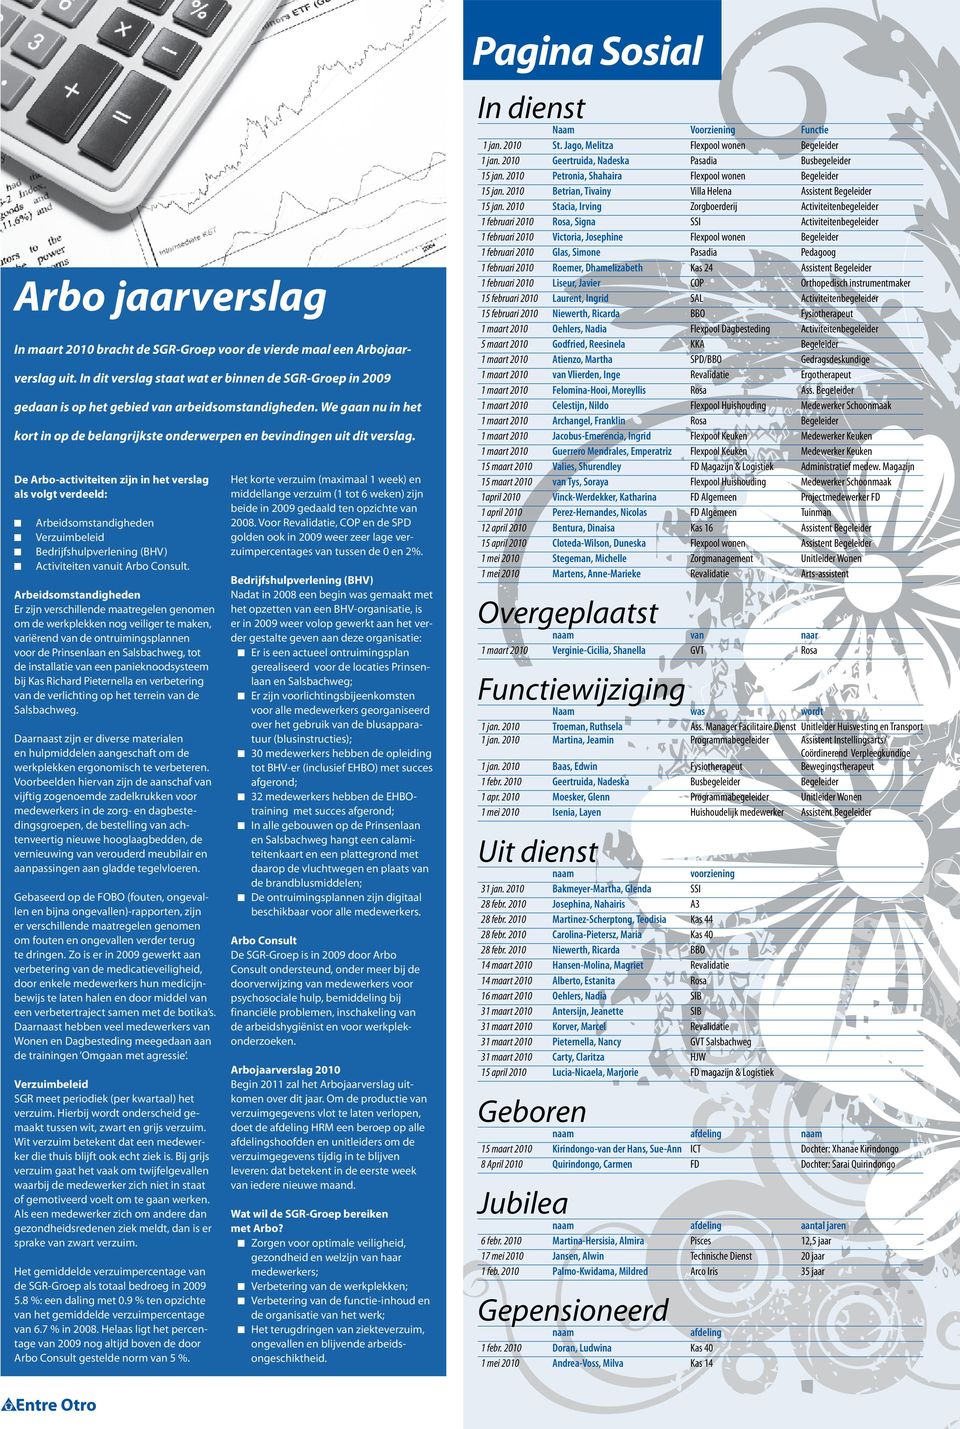 De Arbo-activiteiten zijn in het verslag als volgt verdeeld: Arbeidsomstandigheden Verzuimbeleid Bedrijfshulpverlening (BHV) Activiteiten vanuit Arbo Consult.